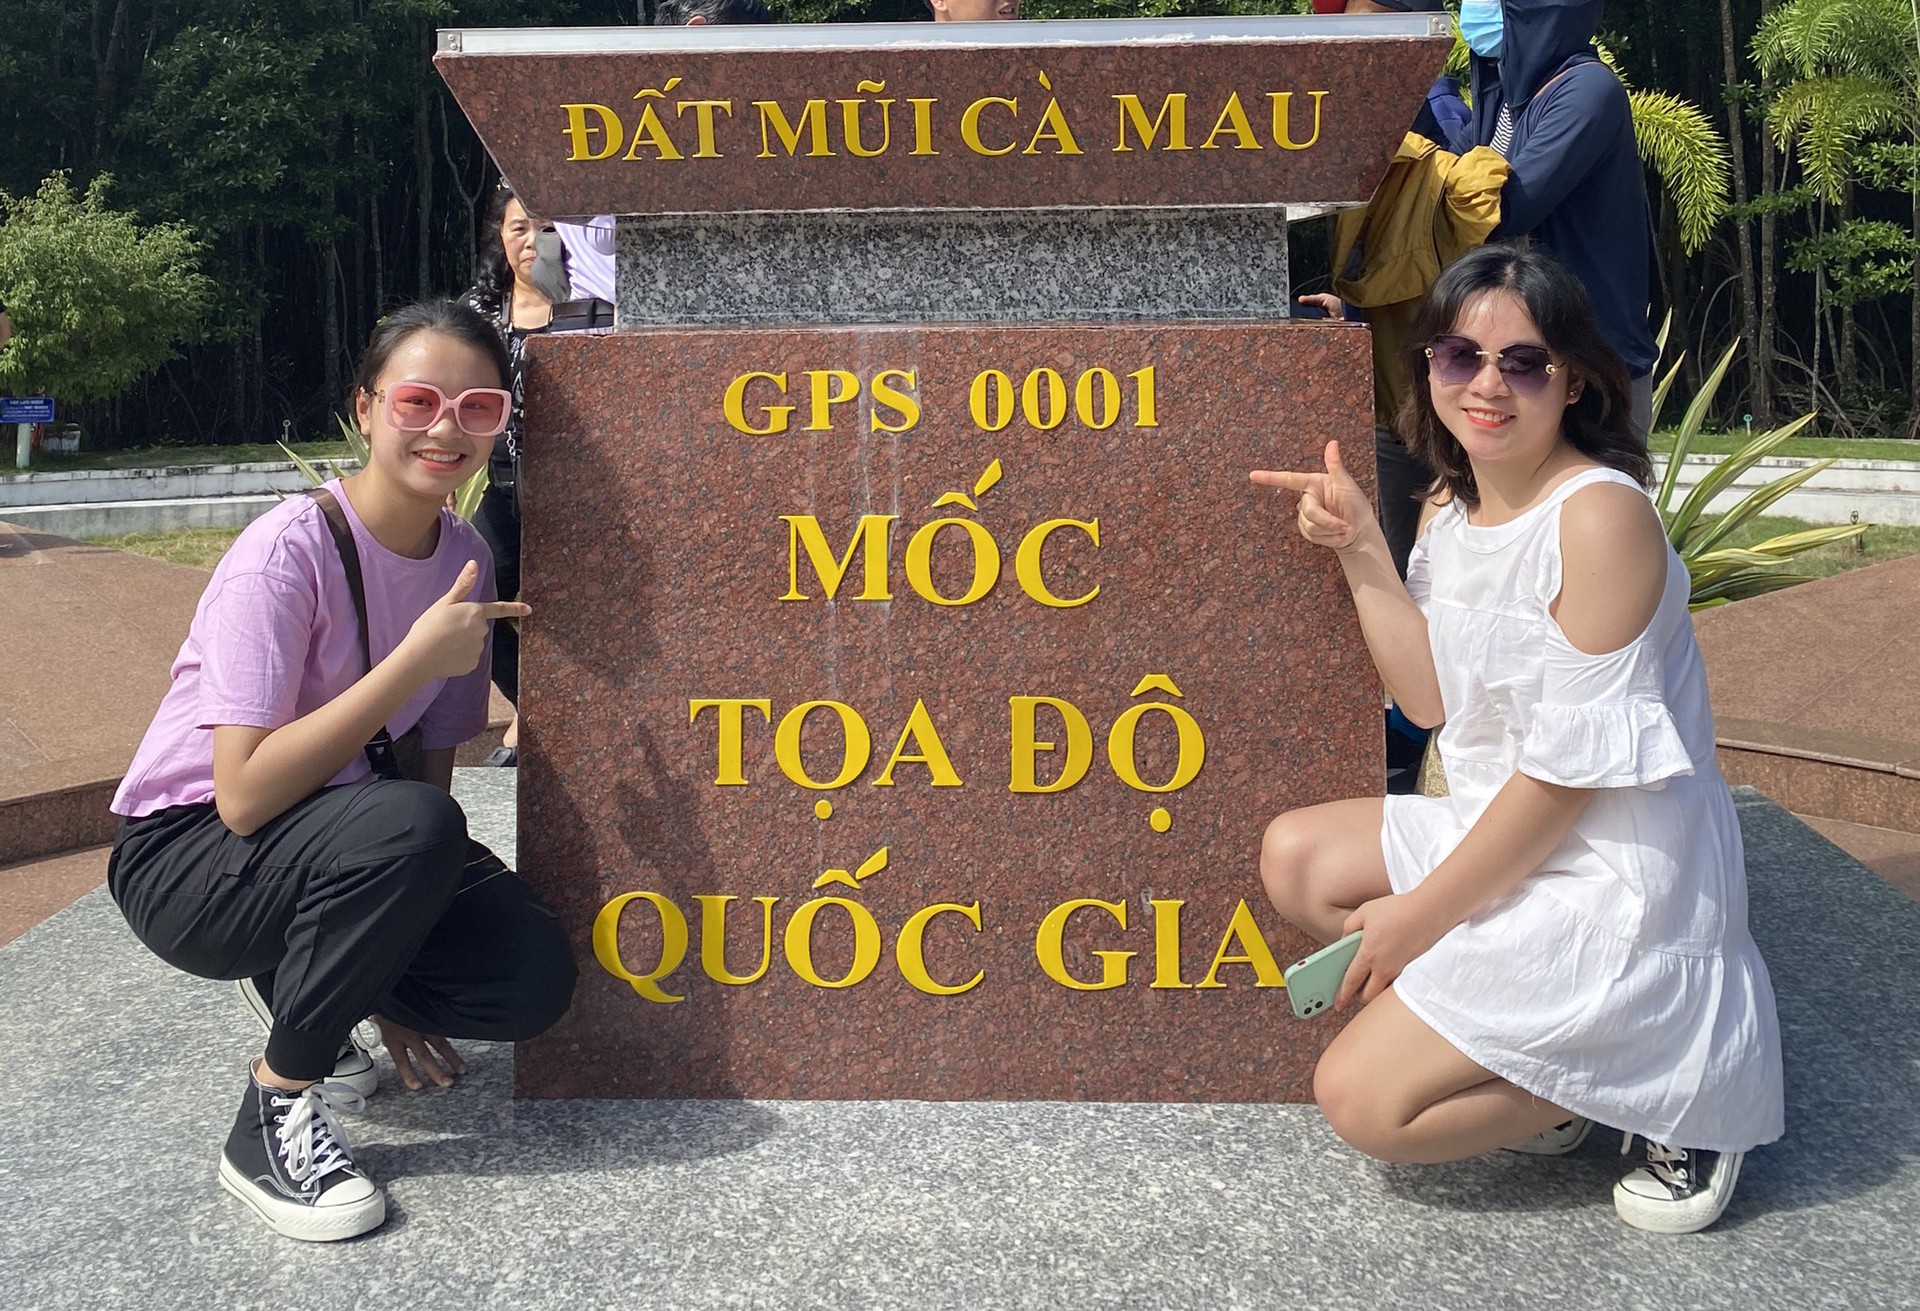 Cho thuê xe du lịch 29 chỗ  đi Cà Mau Đất Mũi - Nguyễn Duy Travel